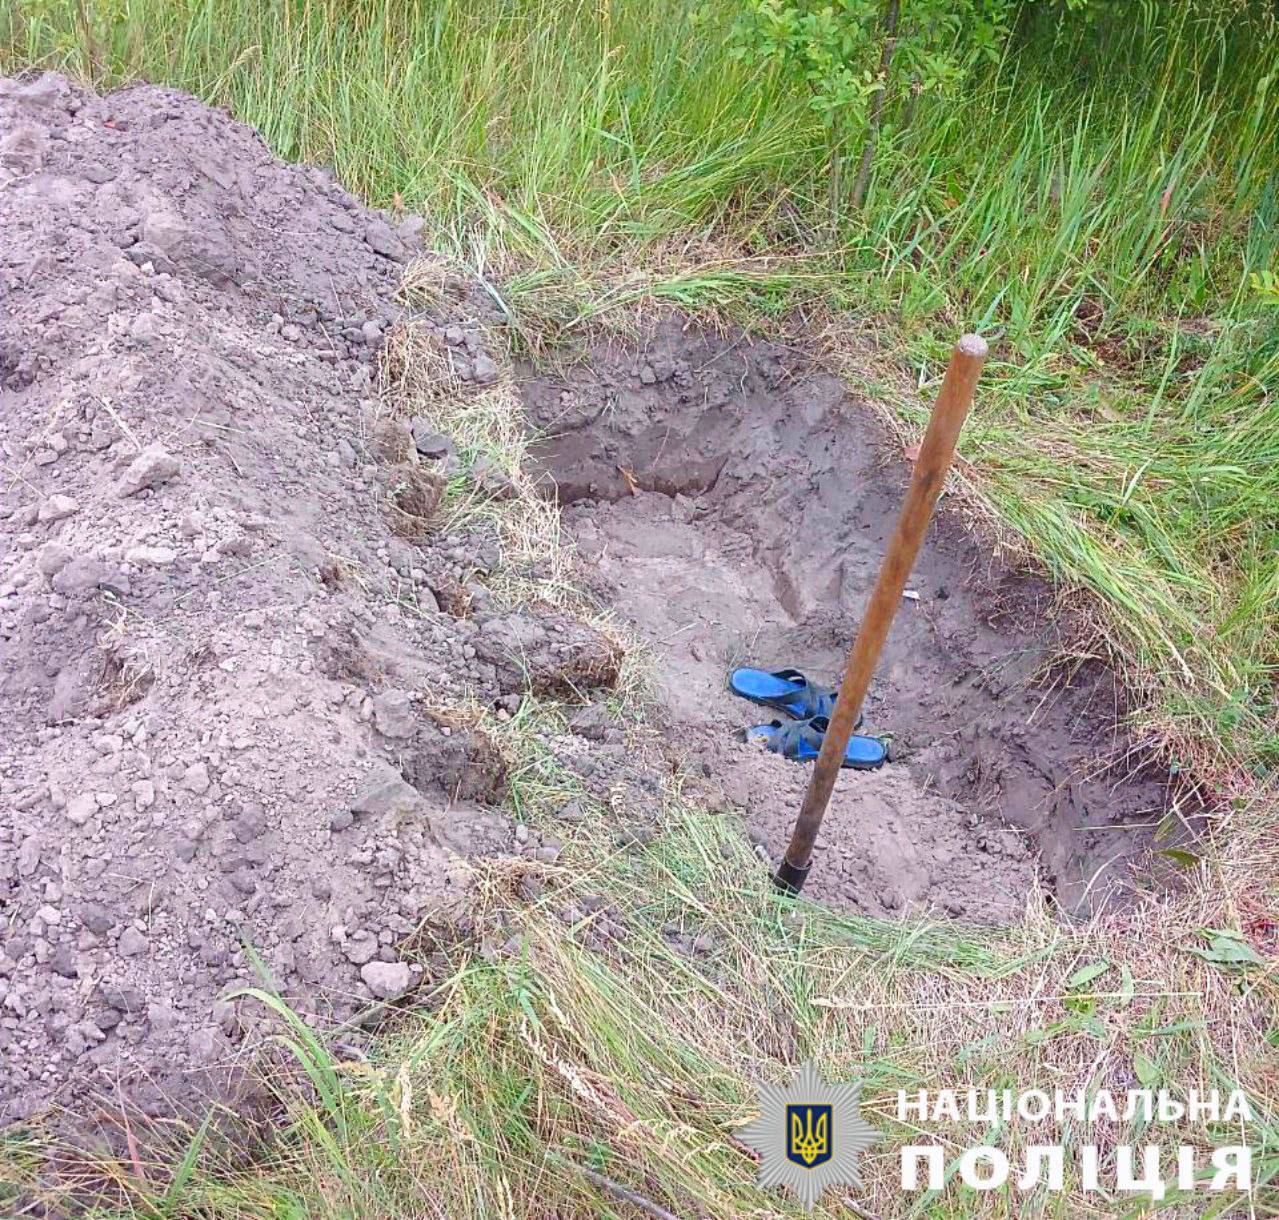 На Киевщине мужчина забил гостя трубой до смерти, а его тело хотел закопать во дворе дома. Подробности дела